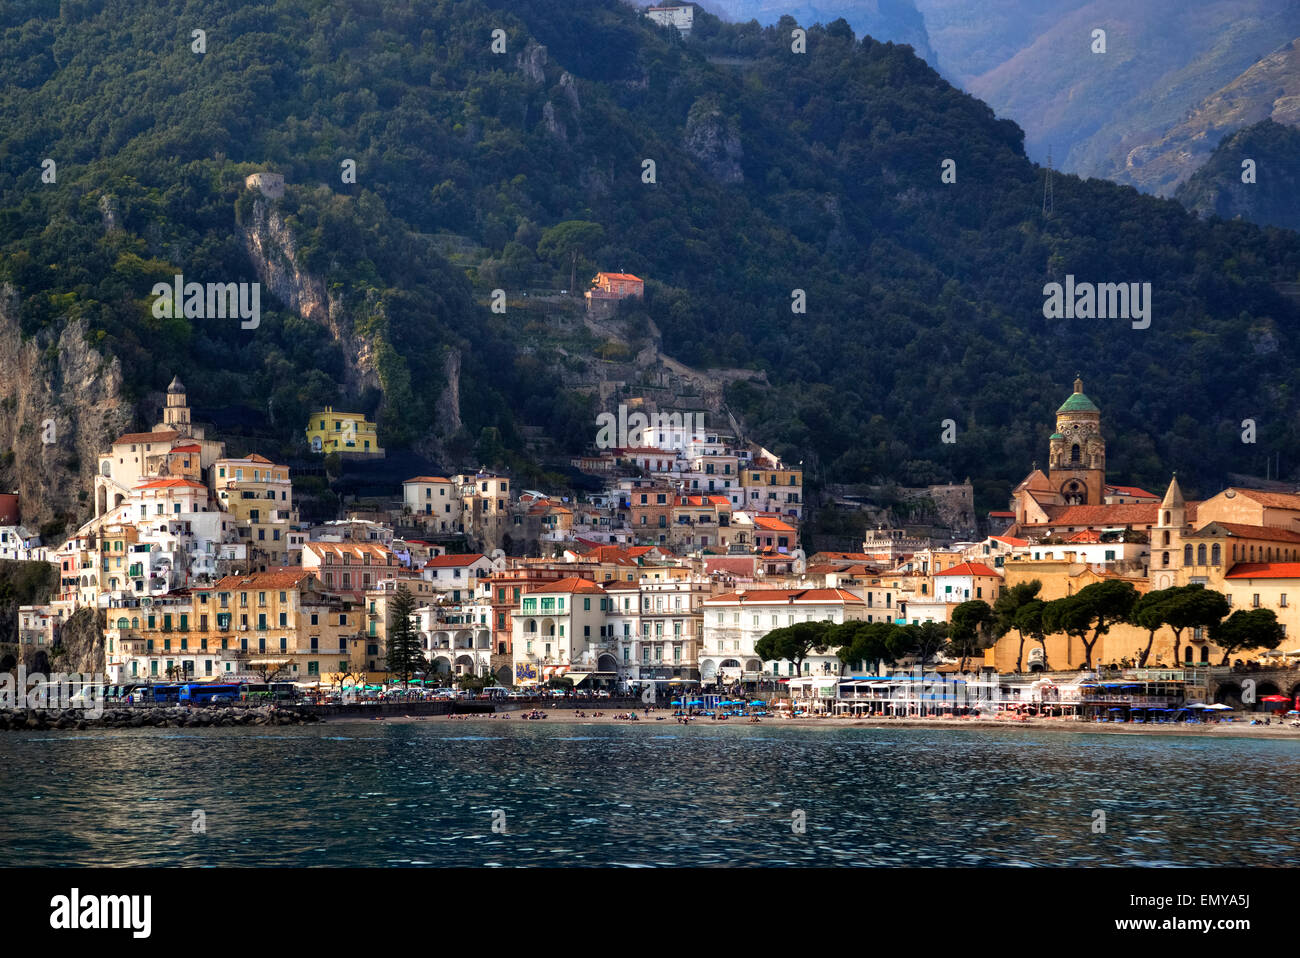 Amalfi, Amalfi Coast, Campania, Italy Stock Photo